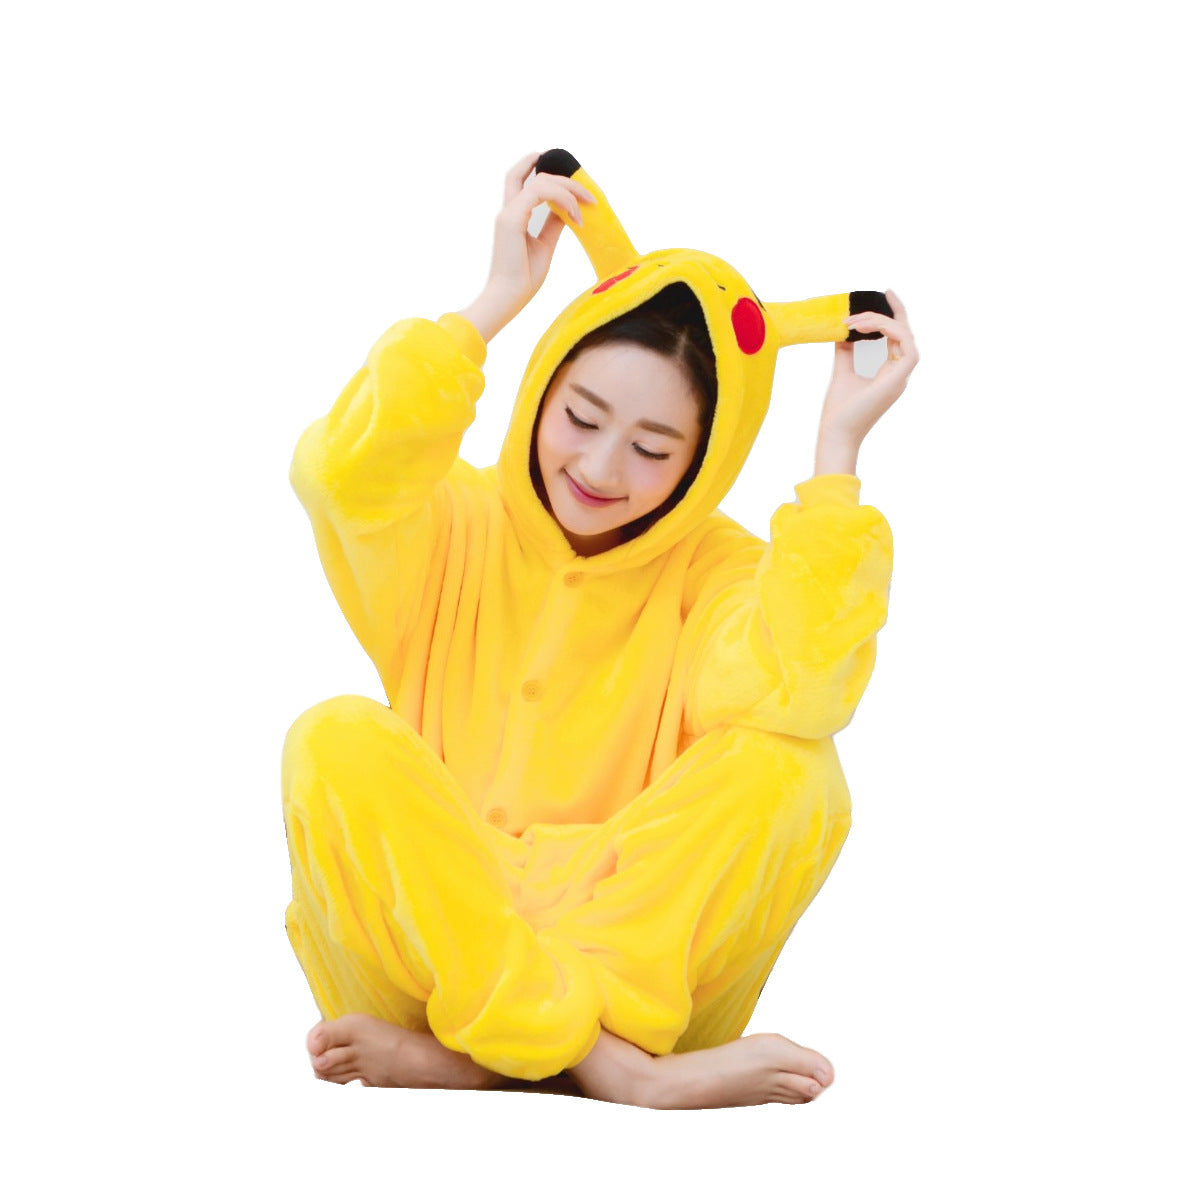 Kids Anime Yellow Halloween Jumpsuit